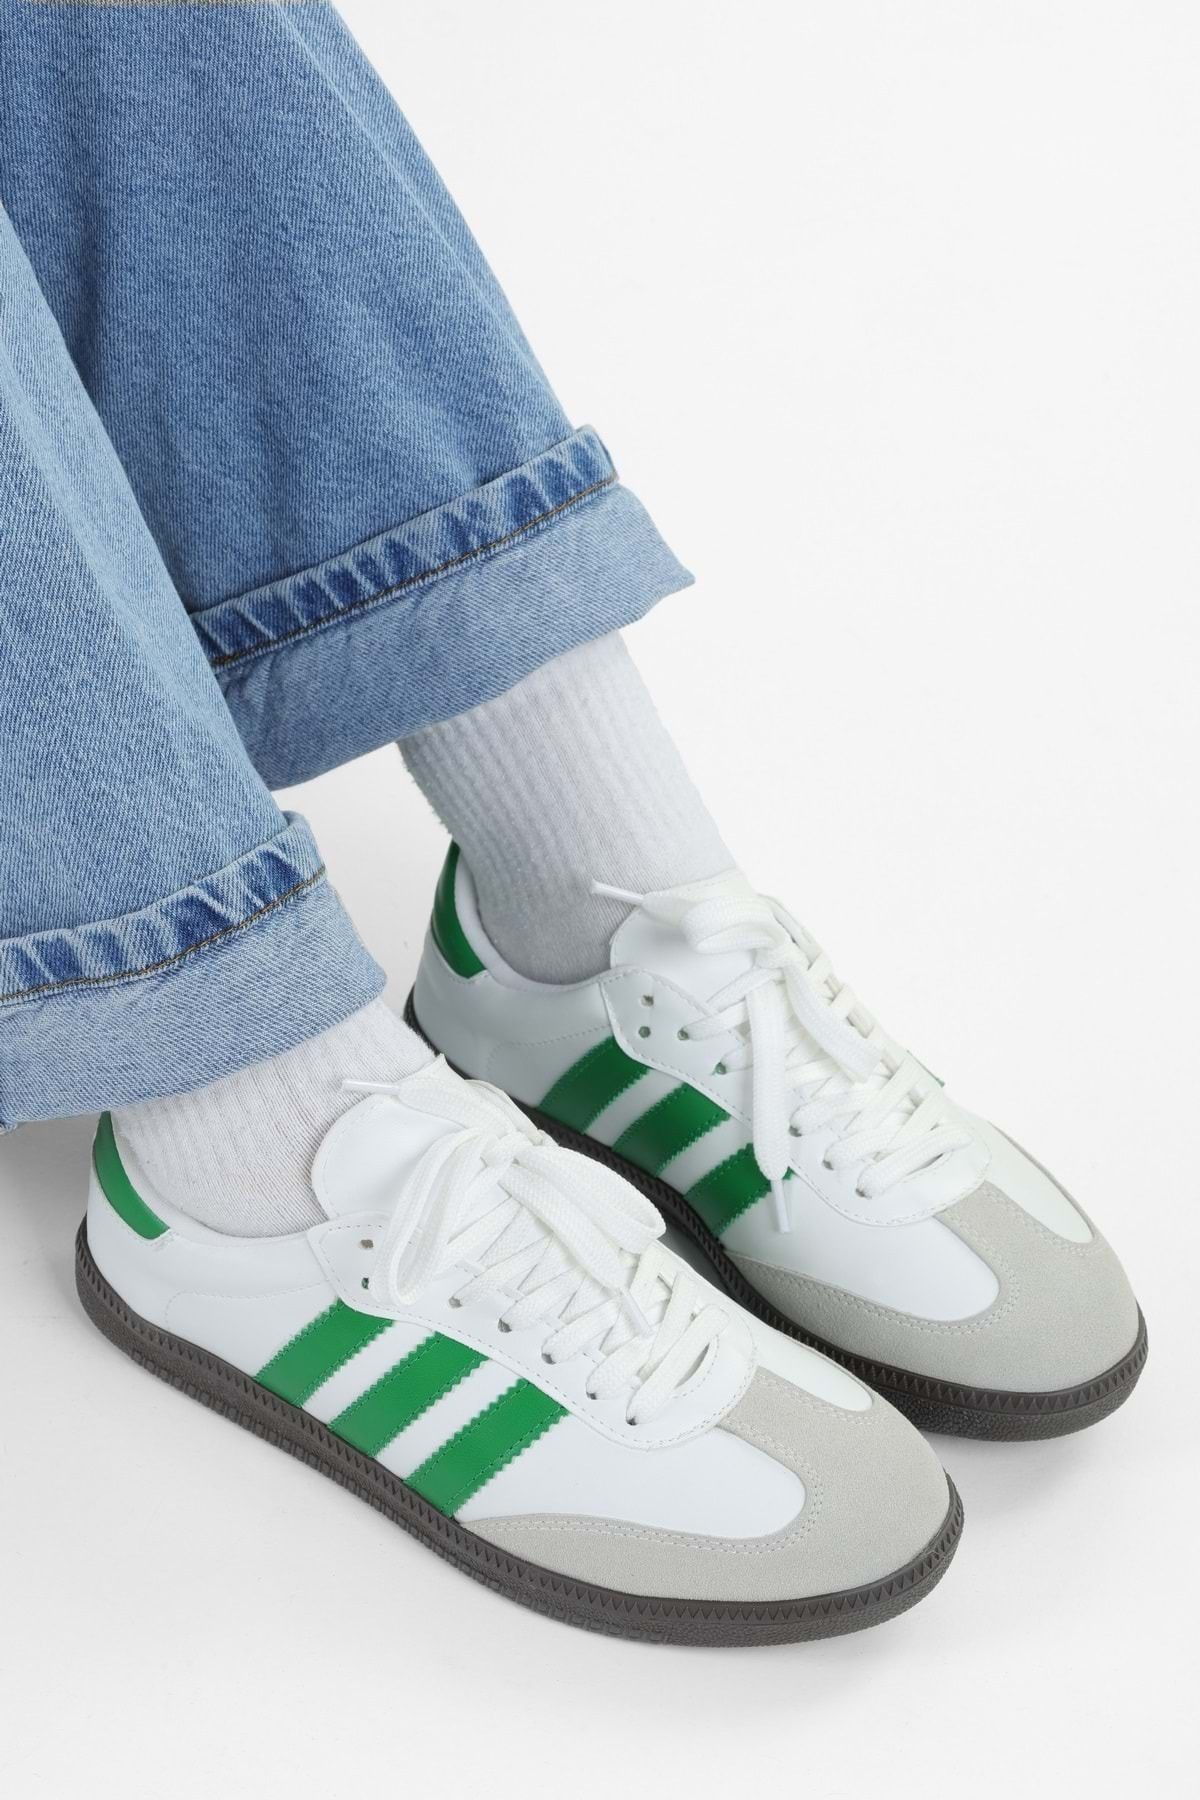 Shoeberry Kadın Sambai Beyaz-Yeşil Çizgili Düz Spor Ayakkabı